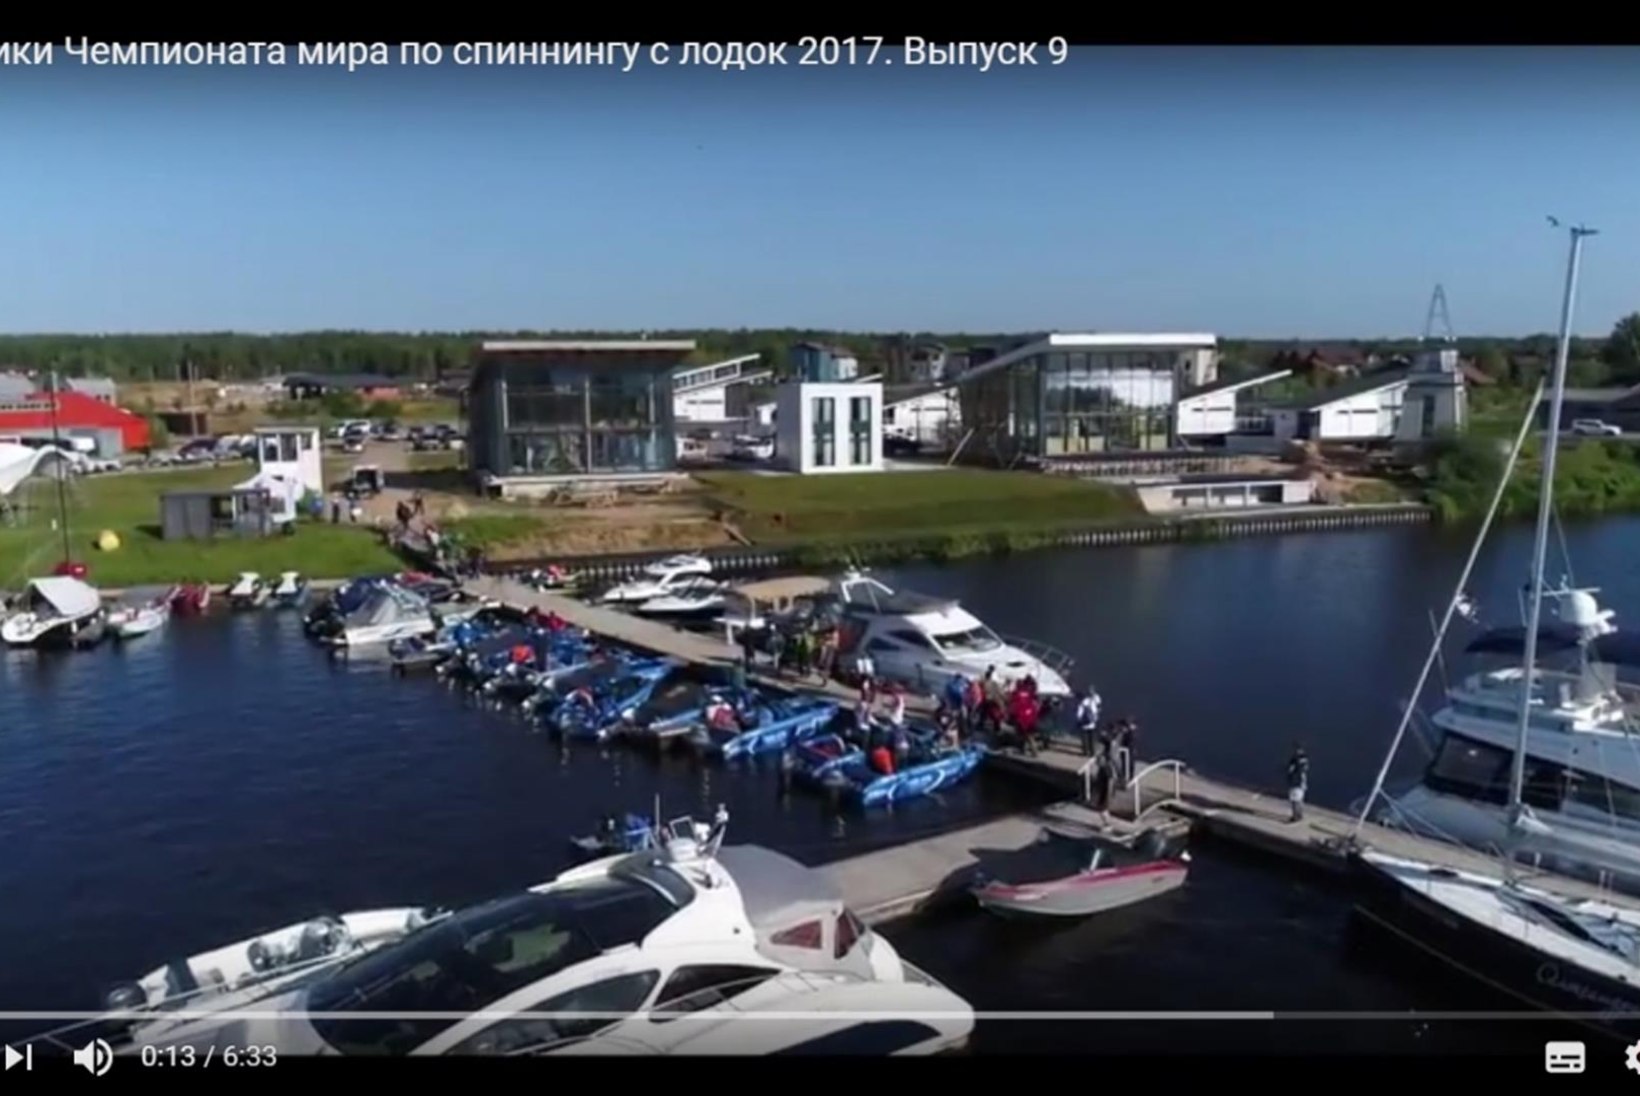 VIDEO: täna algas Venemaal spinningupüügi MM 